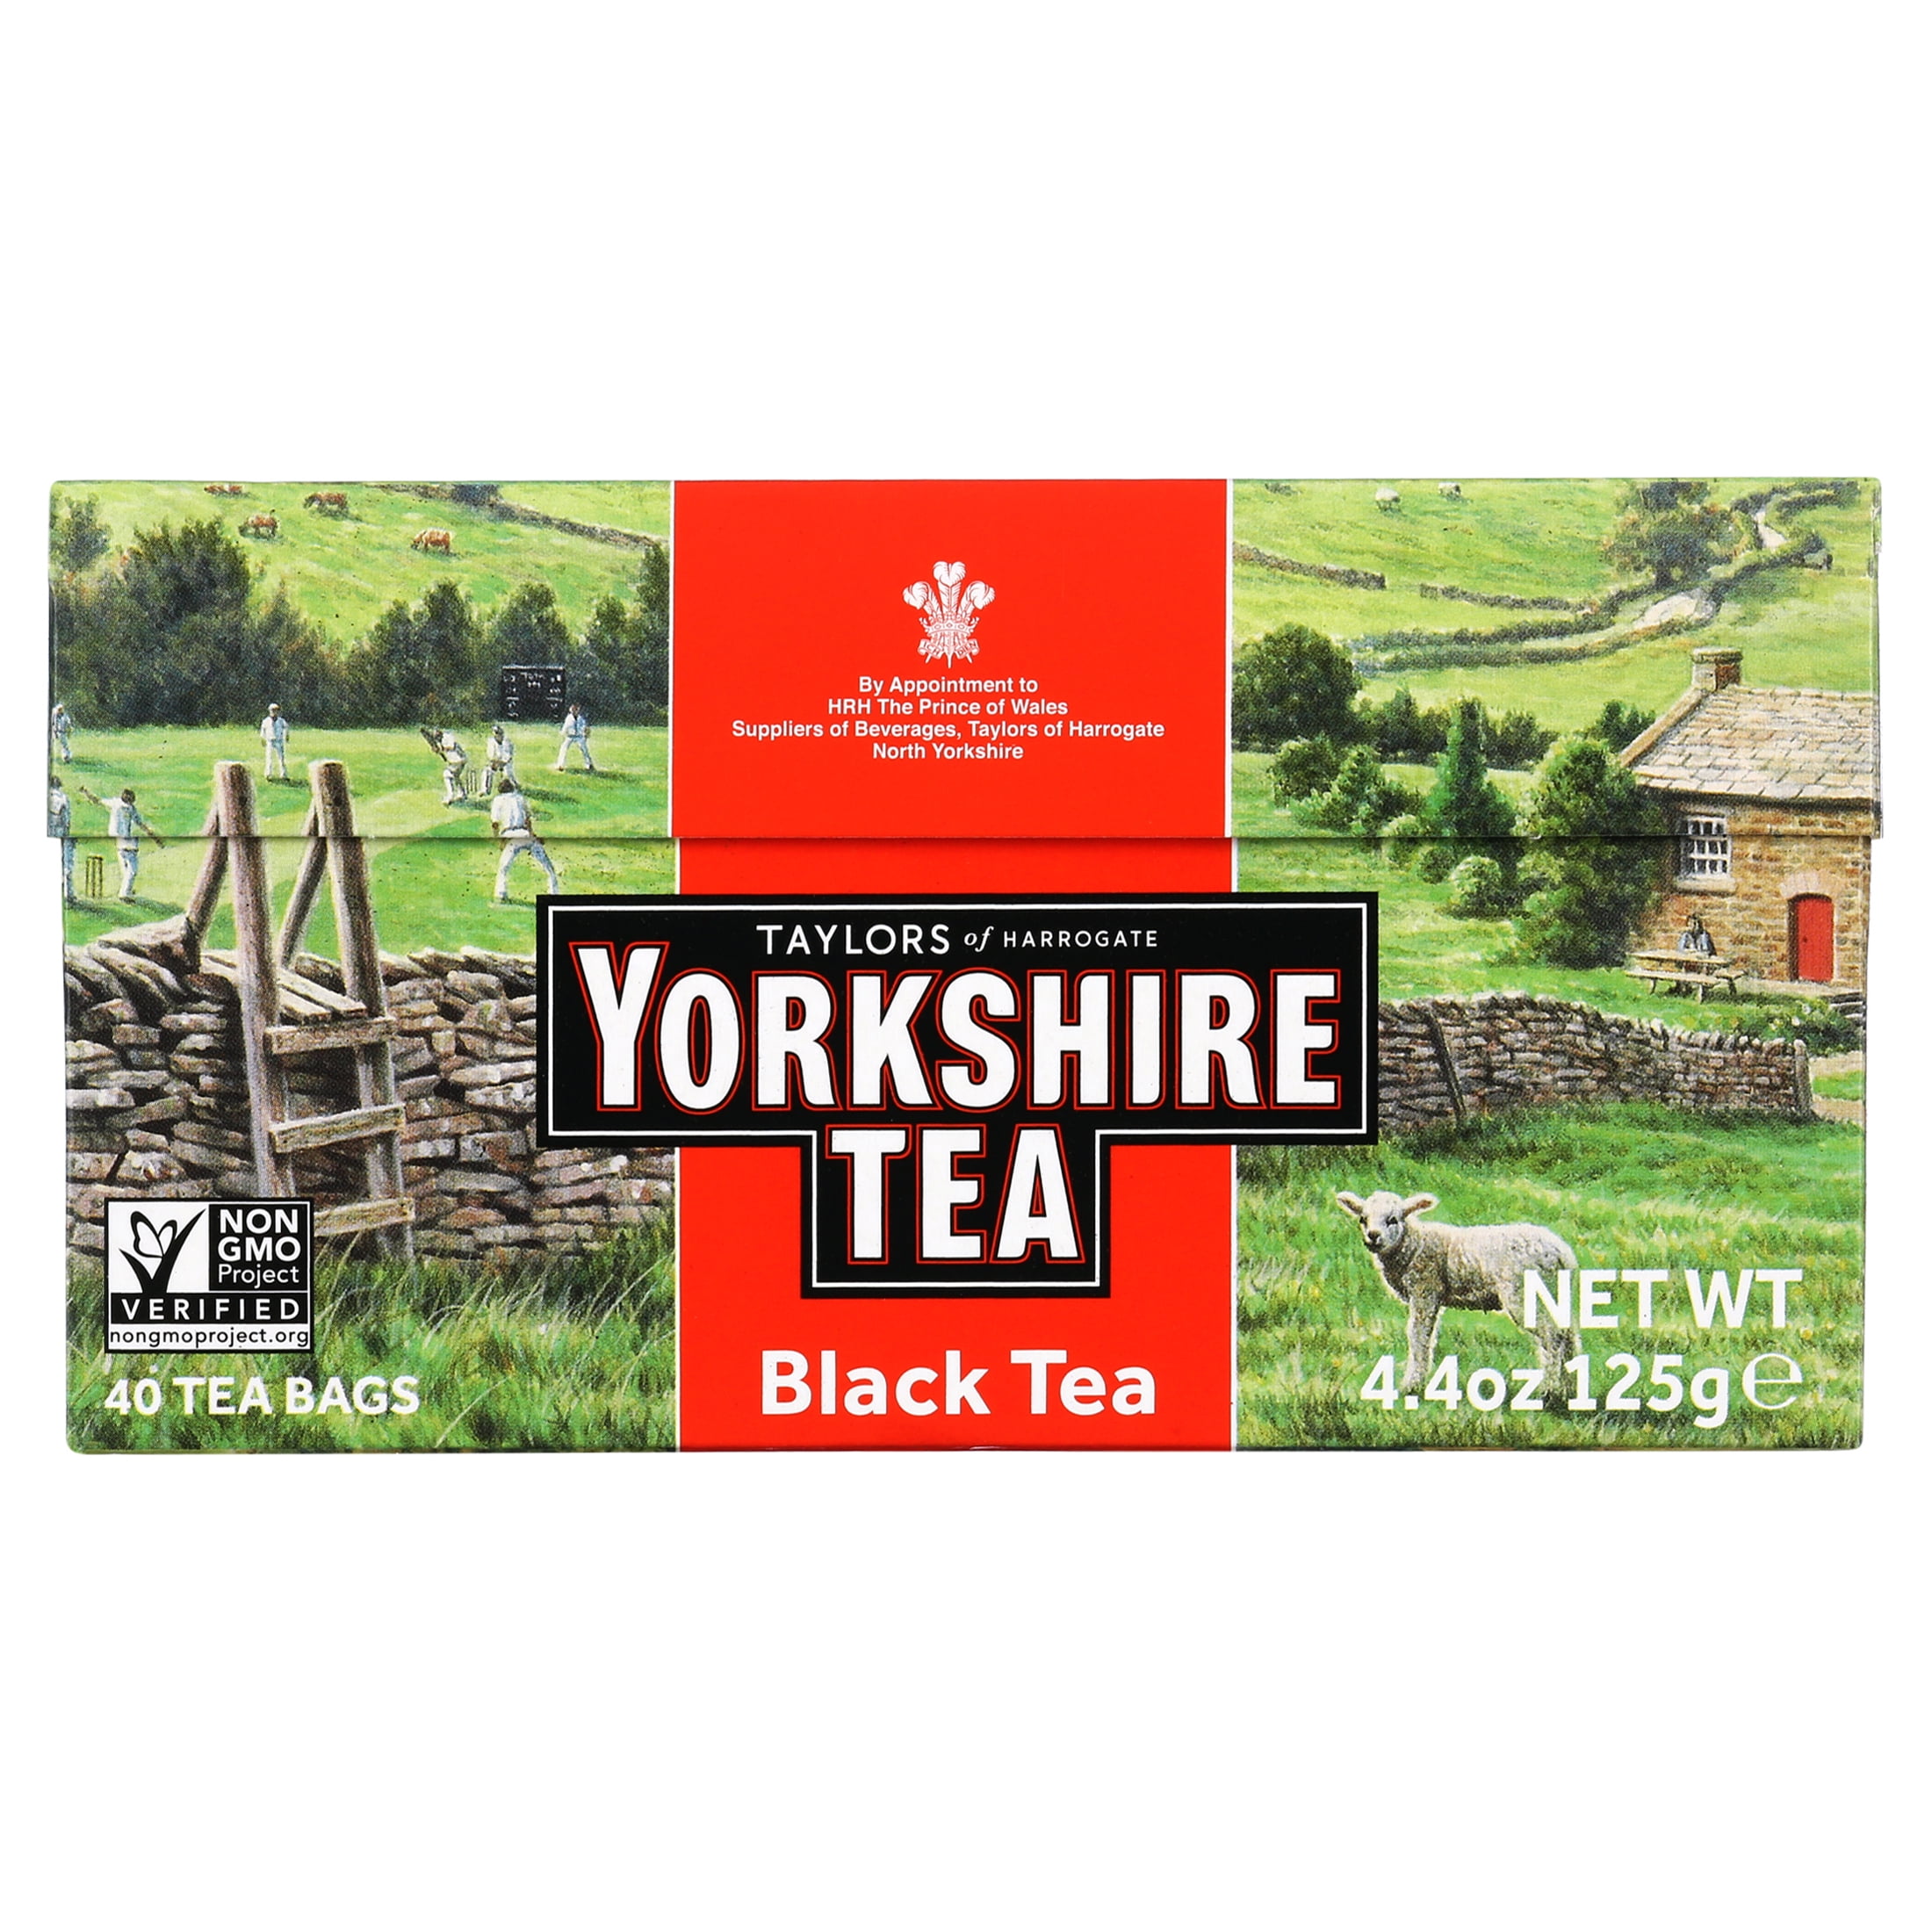 Yorkshire Red Tea loose Tea 8.8oz Foil Bag